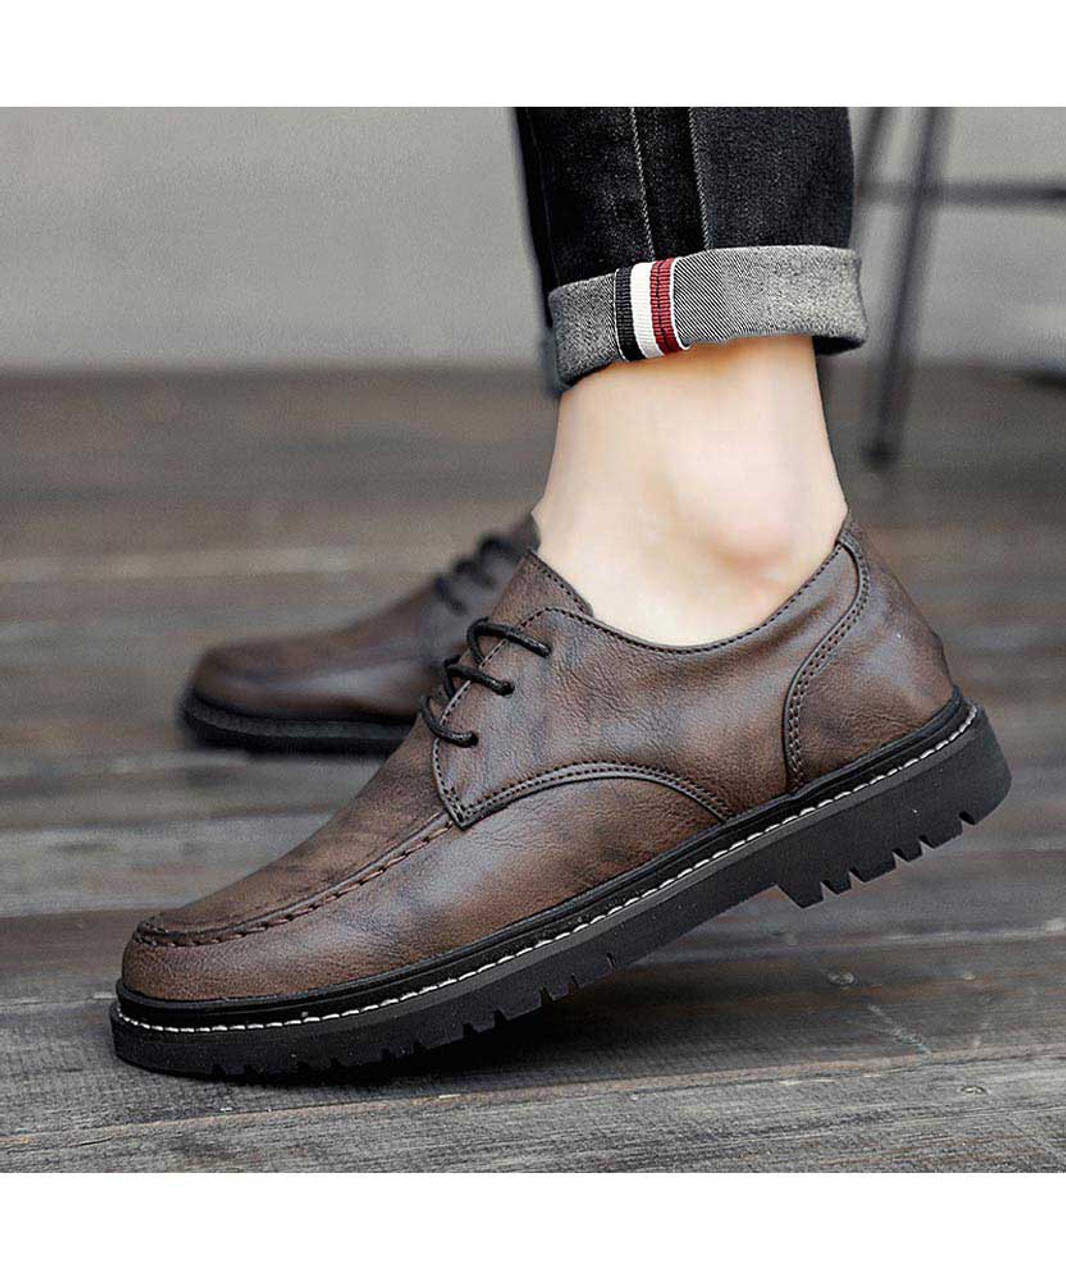 Khaki retro texture leather derby dress shoe | Mens dress shoes online ...